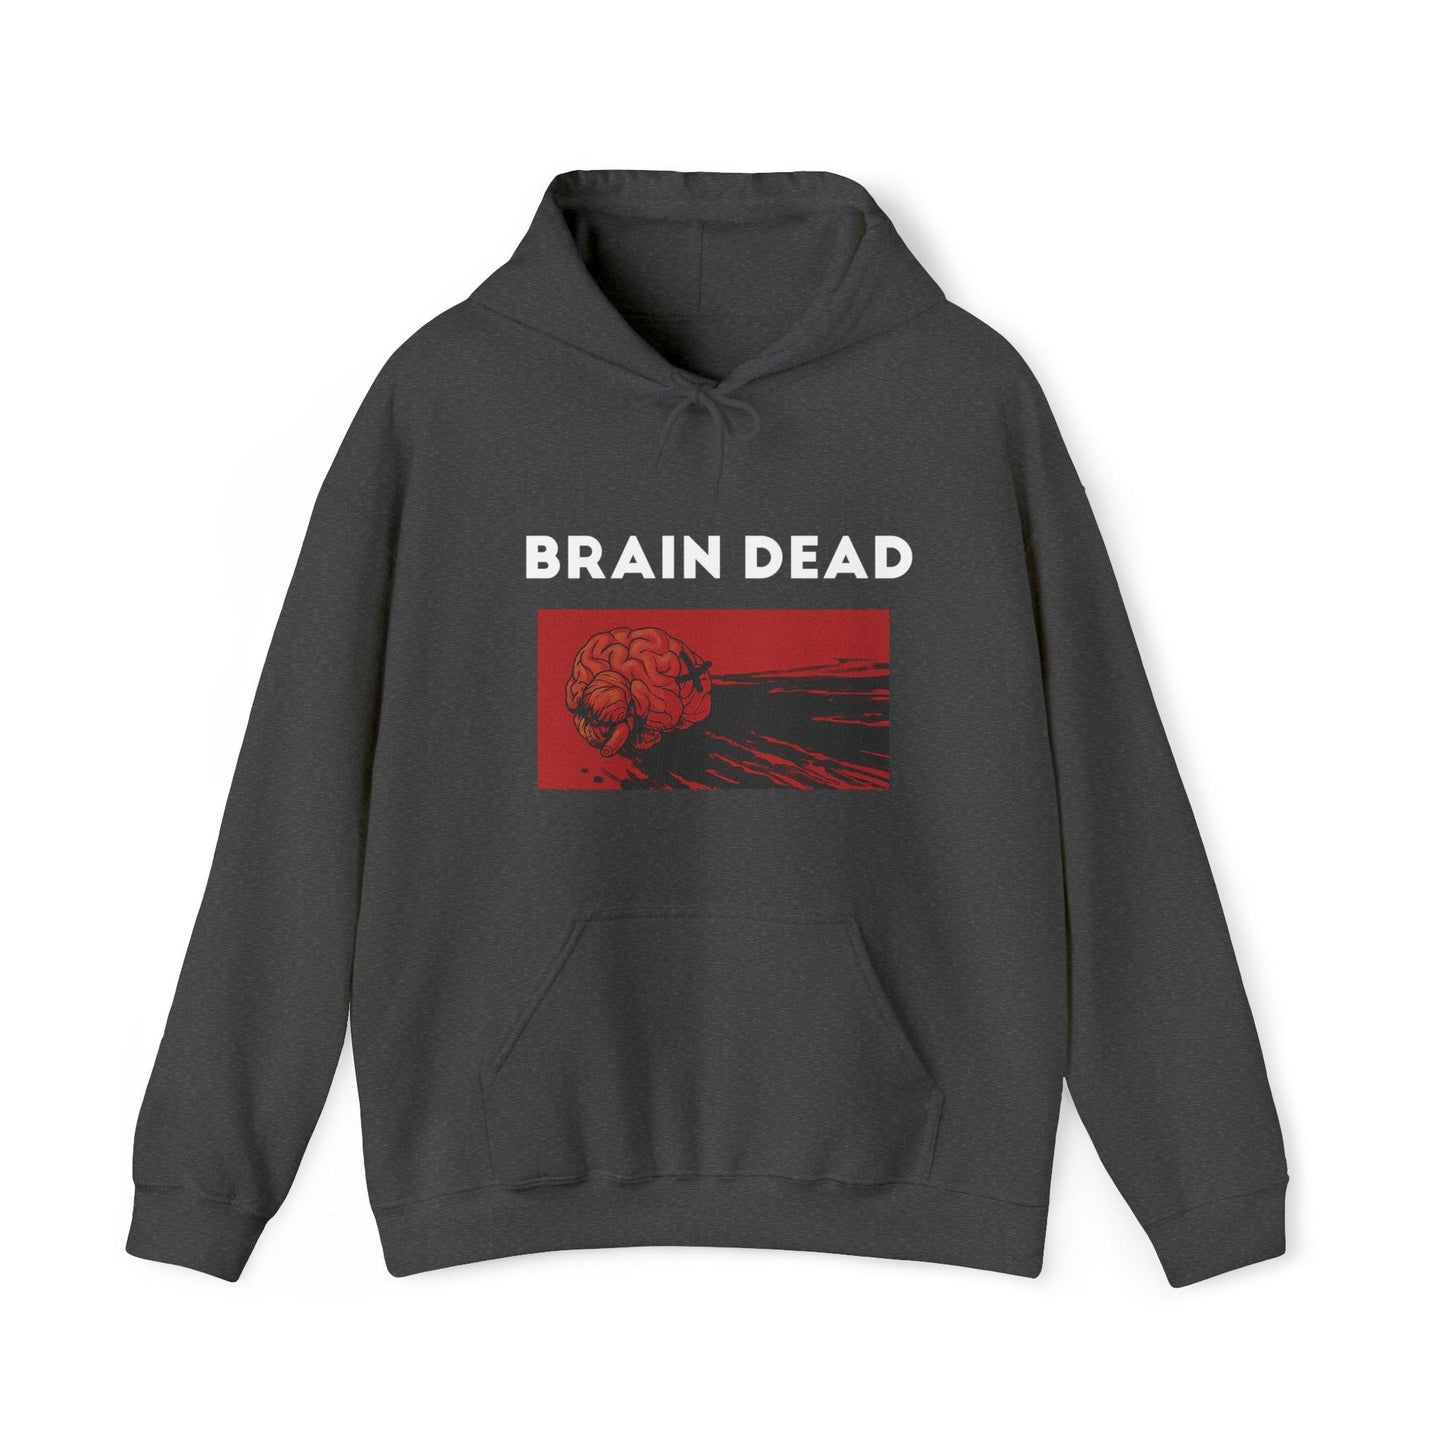 Brain Dead - Unisex Heavy Blend Hooded Sweatshirt - Shaneinvasion